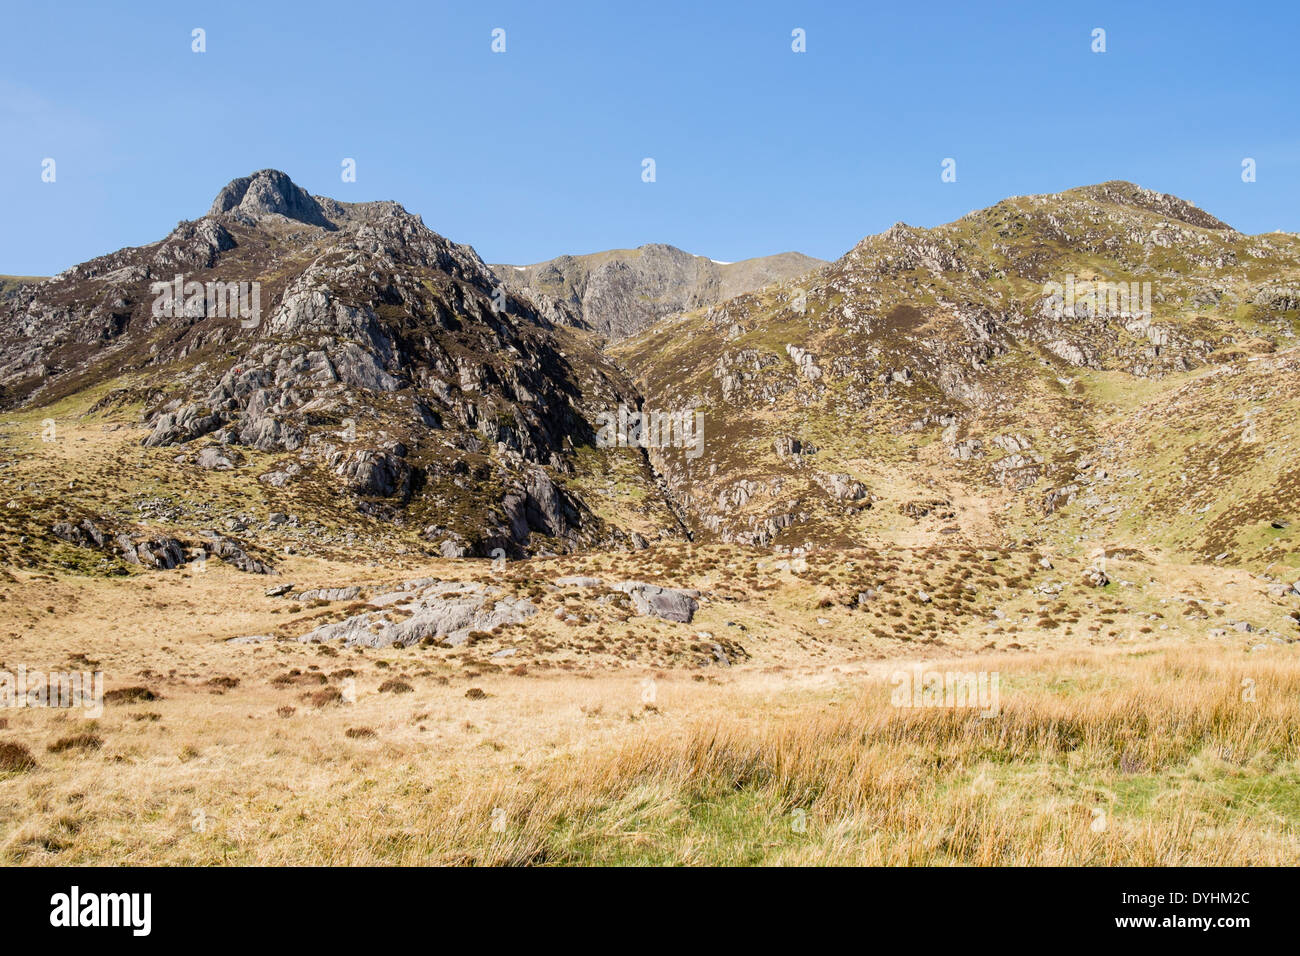 Mount Y Garn Berg von Cwm Idwal in Berge von Snowdonia National Park, Ogwen, Gwynedd, Nordwales, UK, Großbritannien Stockfoto